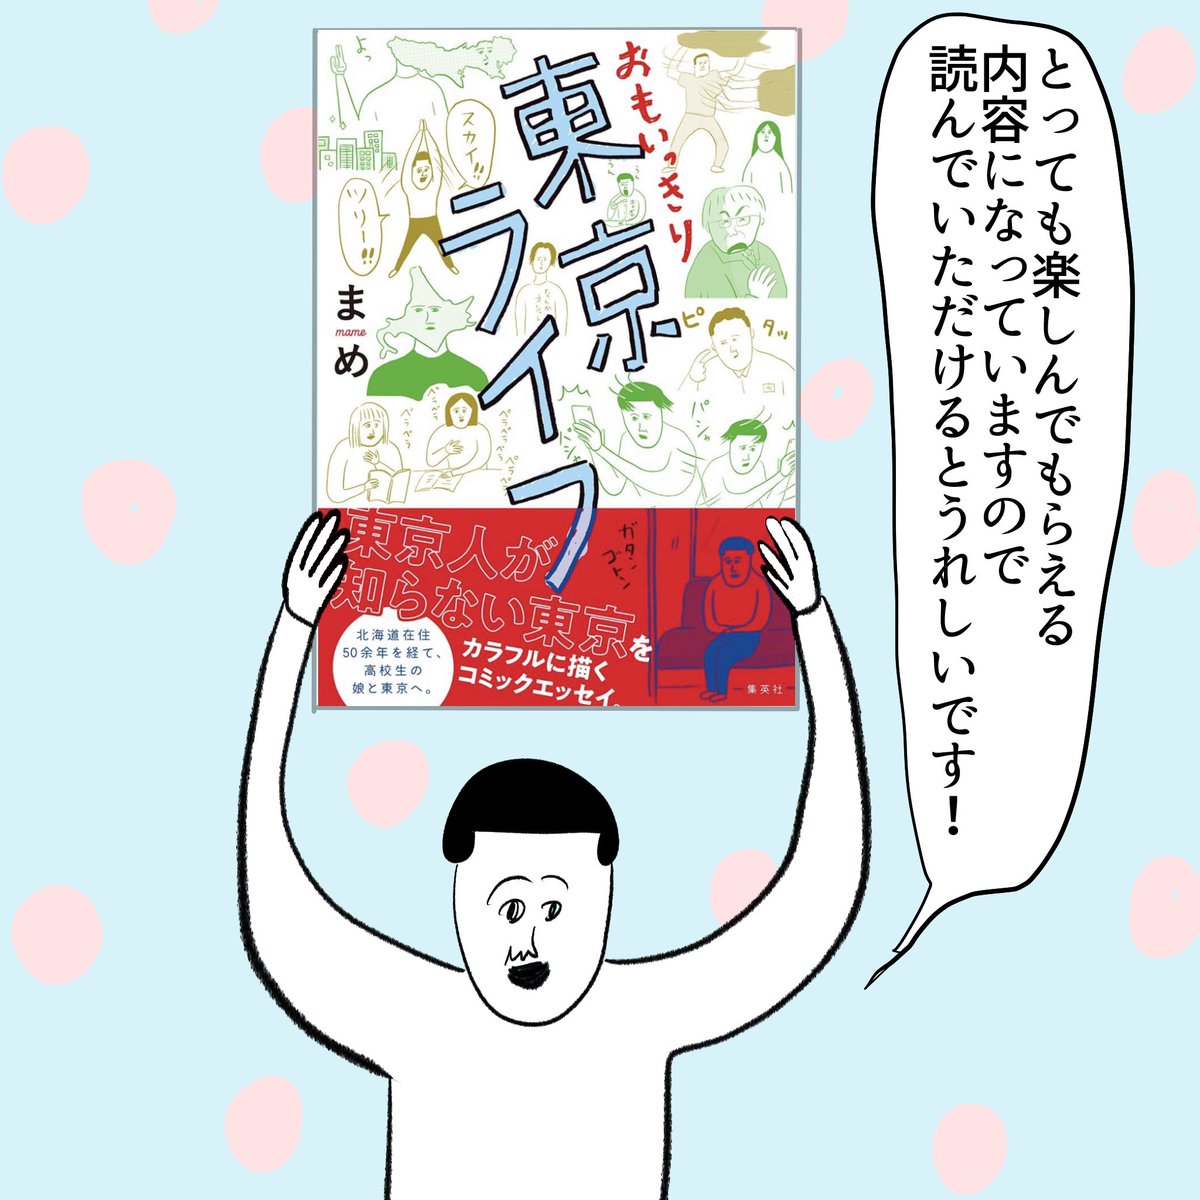 新刊が出ます! よみタイ@shu_yomitai さんで連載していた「おもいっきり東京ライフ」が単行本になります。 どうぞよろしくお願いします🙇‍♀️ 試し読みもできるので是非〜 ↓↓↓ 